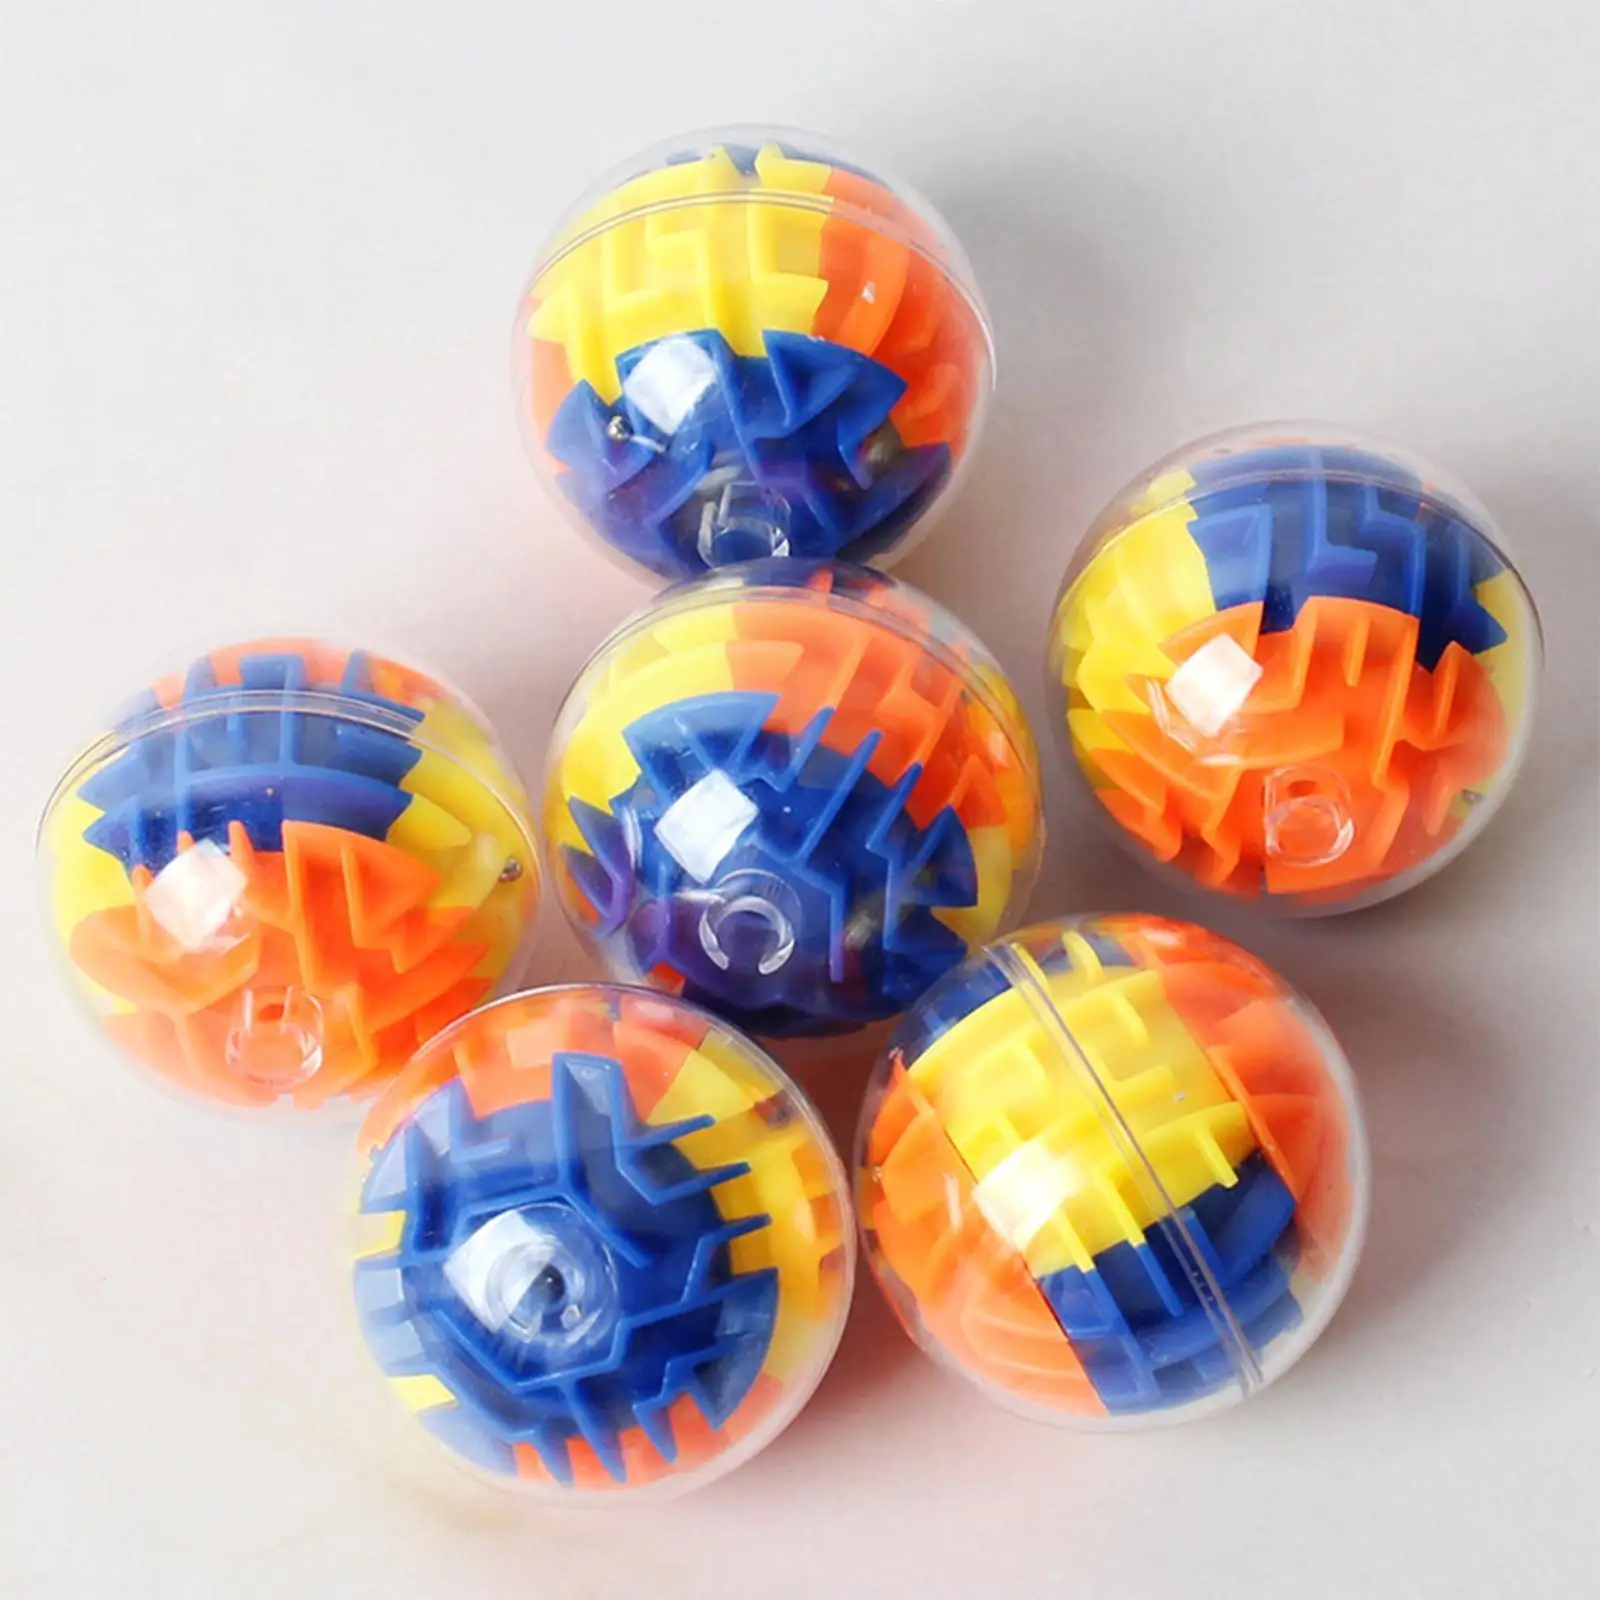 

3d шар-лабиринт Монтессори, игрушки, 3d гравитационная память, последовательный шар-лабиринт для детей и взрослых, головоломка для мозга, обуч...